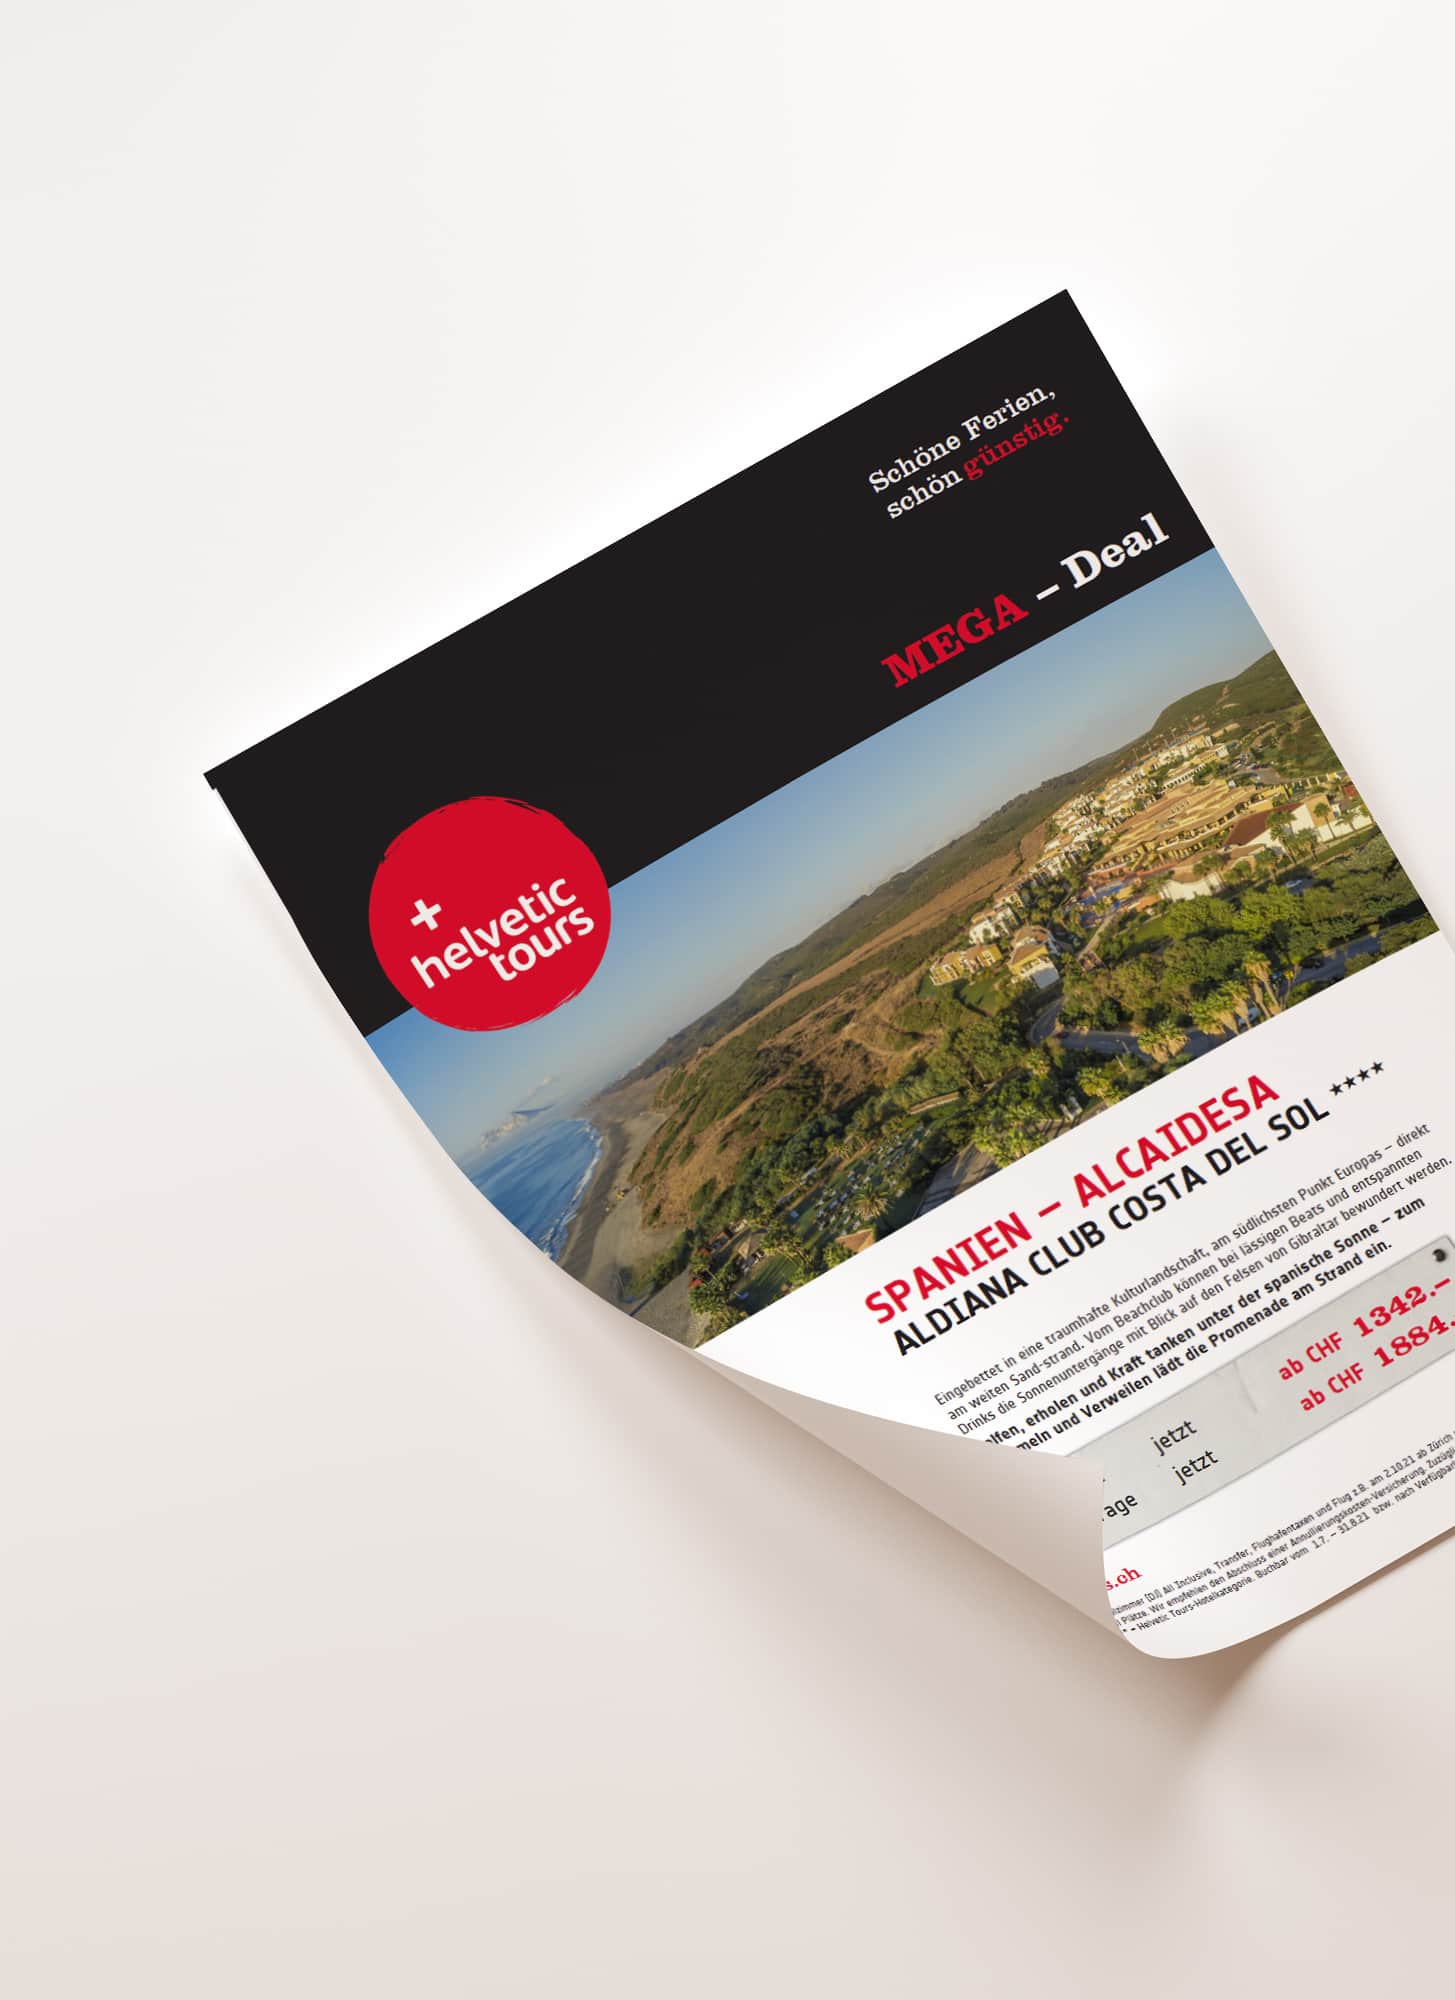 Ein Flyer von Helvetic Tours mit dem Reiseangebot Spanien, Alcaidesa